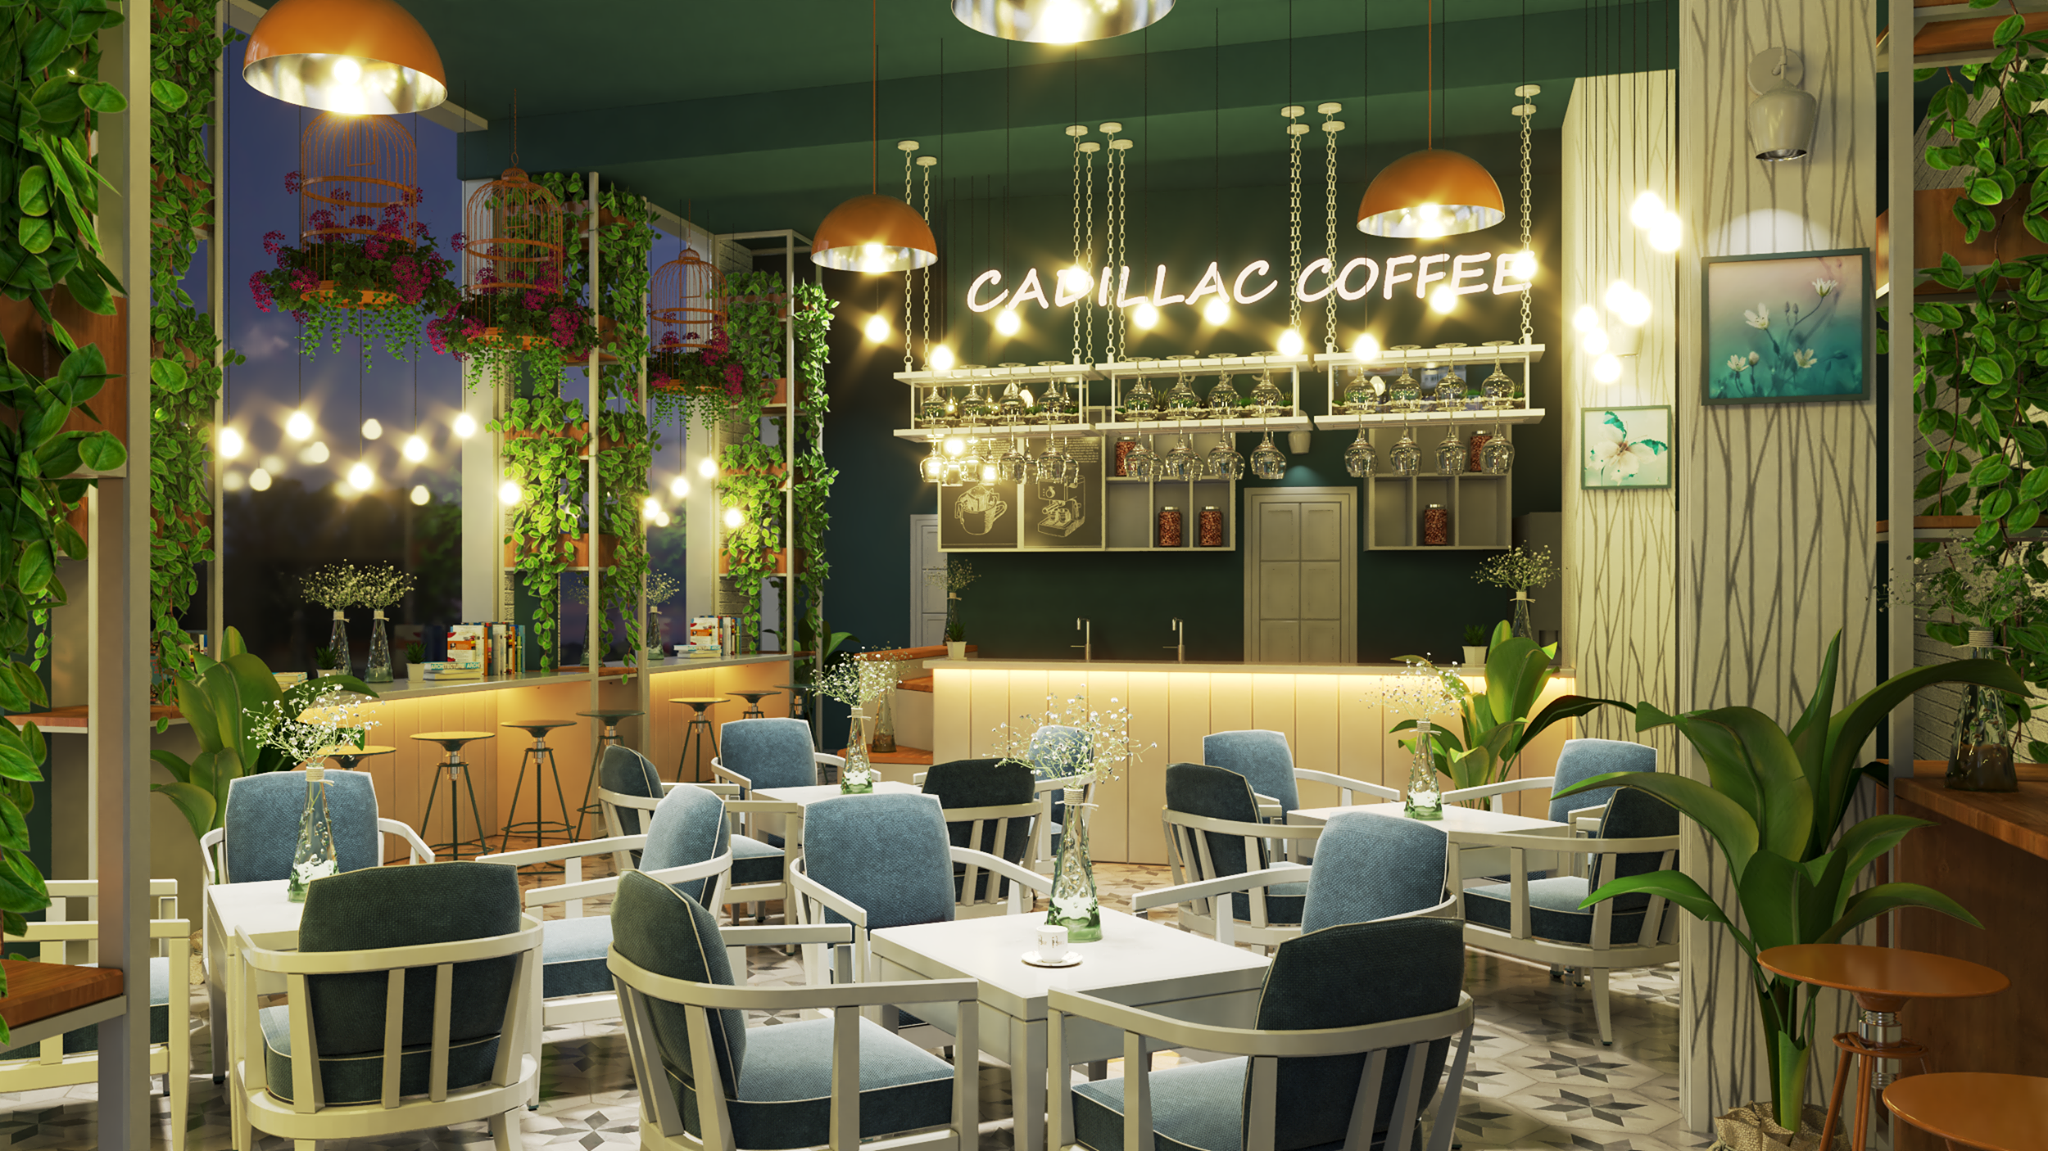 Với sự trỗi dậy của ngành dịch vụ quán cafe, yêu cầu về thiết kế nội thất đơn giản và đẹp ngày càng được chú trọng hơn. Hãy cùng ngắm nhìn thiết kế nội thất quán cafe đơn giản đẹp, tinh tế và hiện đại để đem lại cho khách hàng một trải nghiệm tuyệt vời nhất!